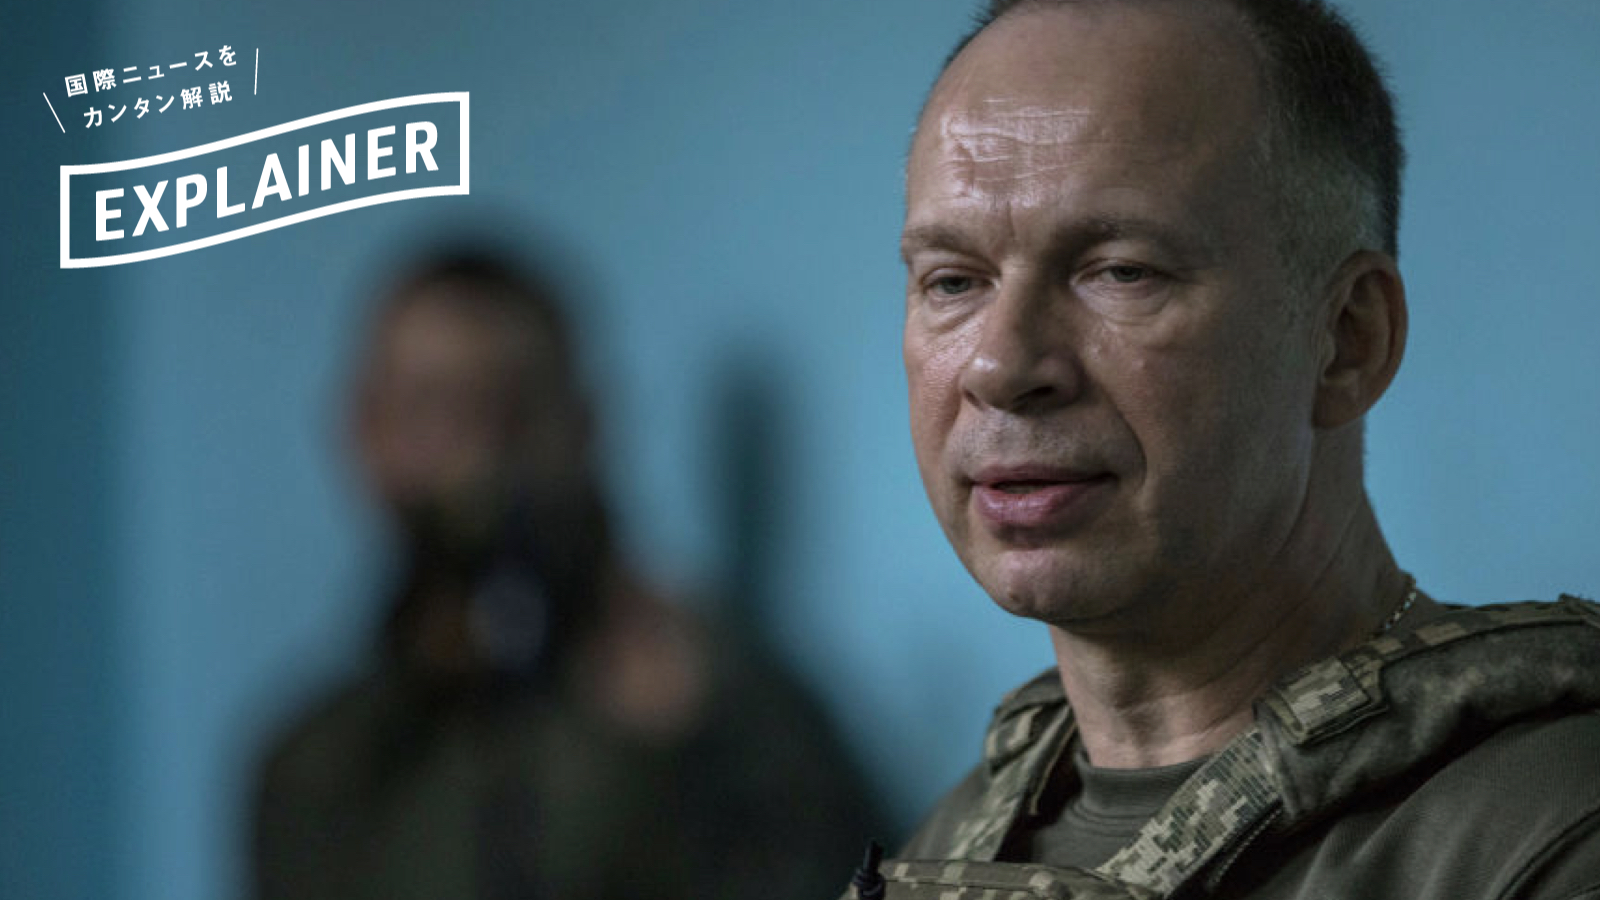 【解説】露メディアは「ウクライナの新総司令官」をどう分析しているか